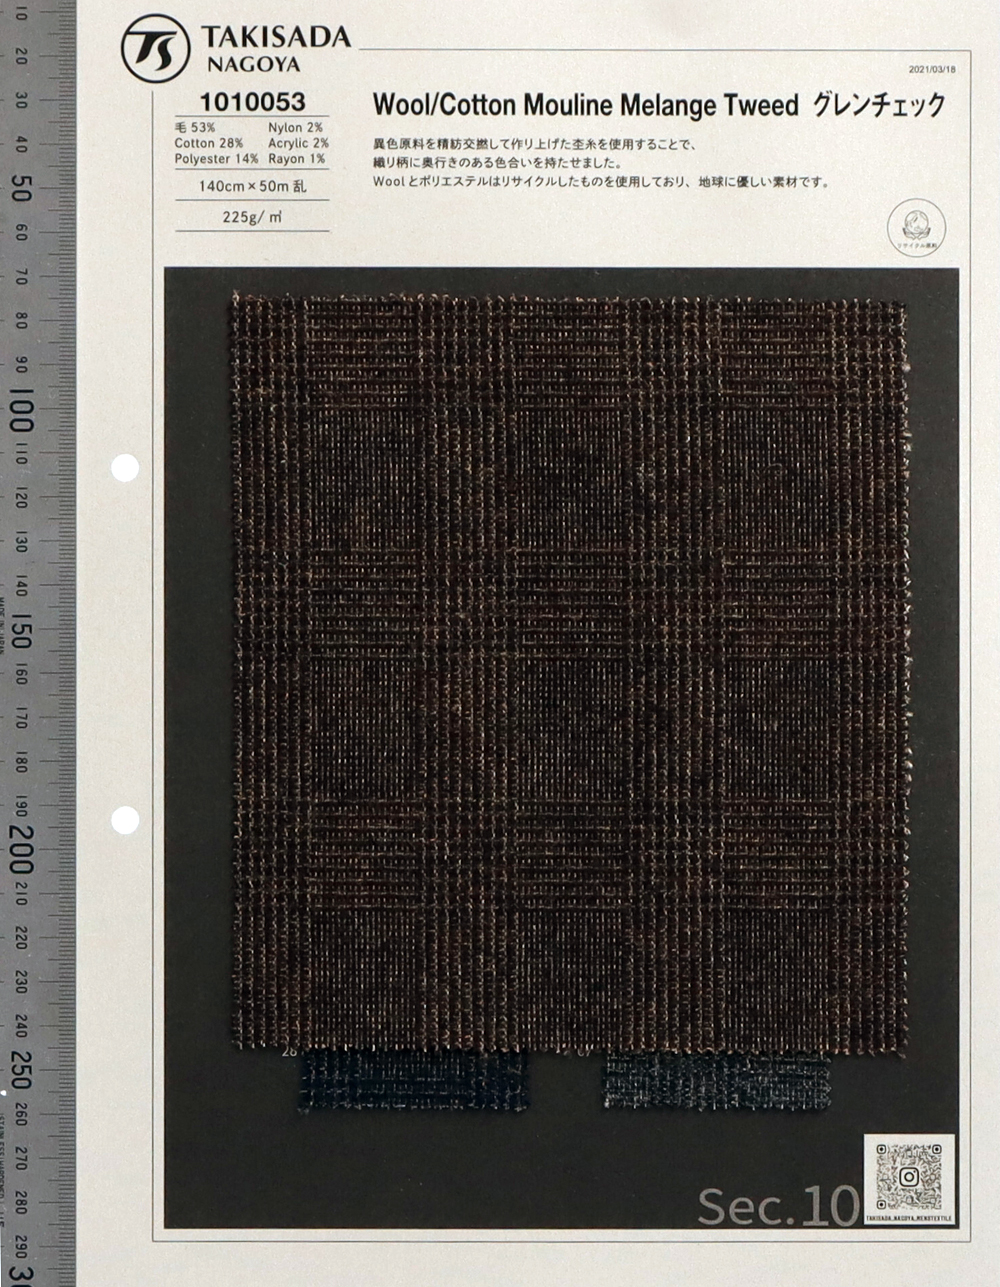 1010053 RE: NEWOOL® Wolle/Baumwolle Melange Tweed Glen Check[Textilgewebe] Takisada Nagoya